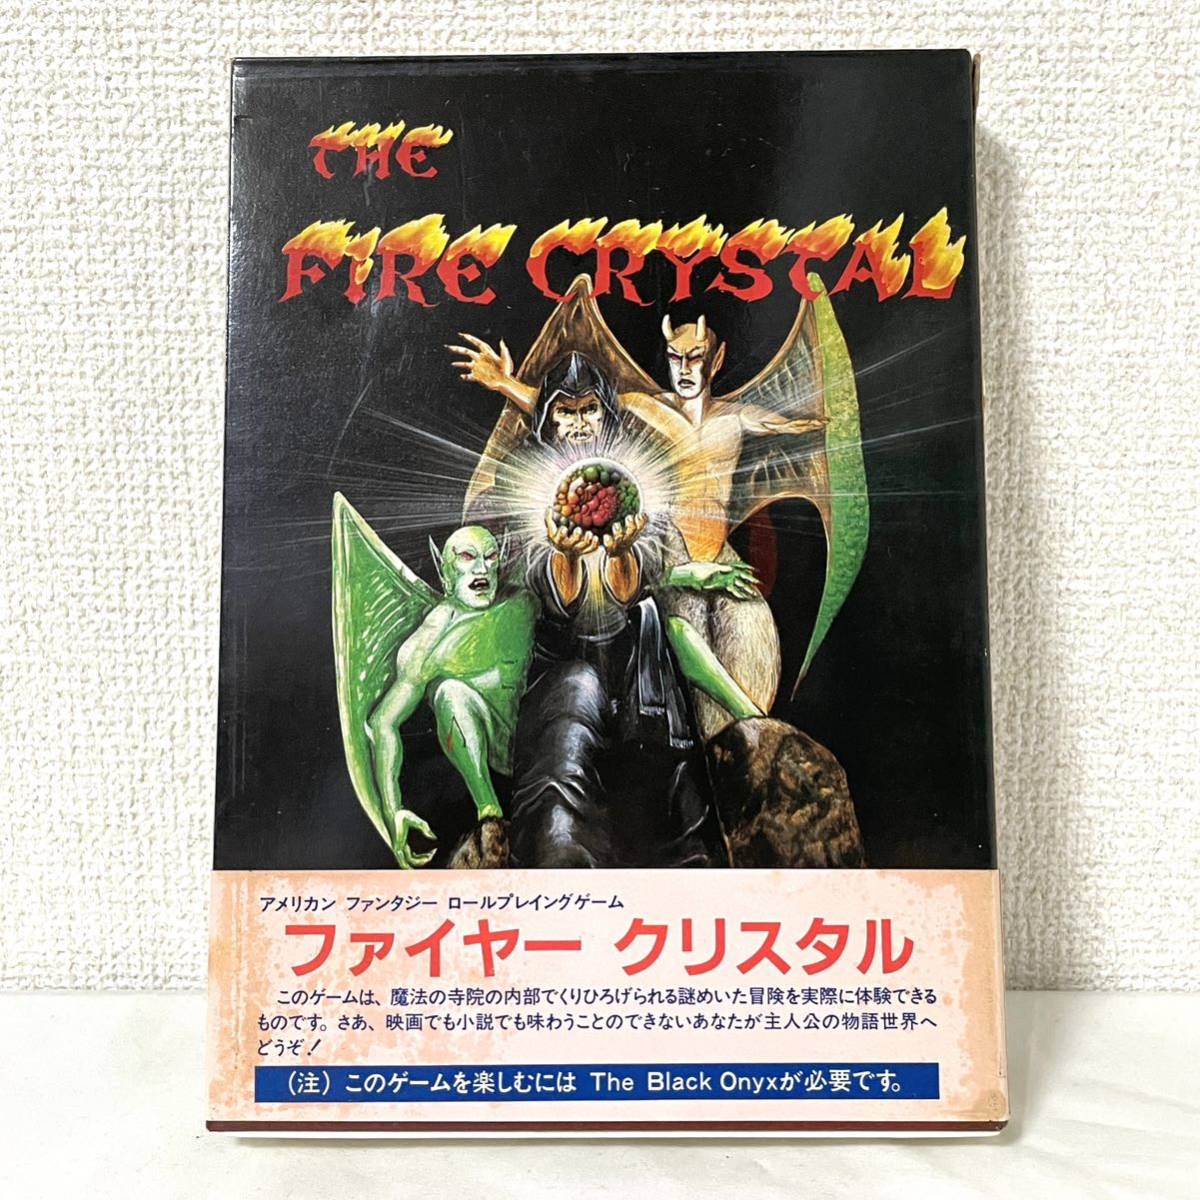 ザ・ファイヤークリスタル THE FIRE CRYSTAL PC-8801 mkⅡ ソフト カセットテープ 箱 説明書BBS (r490)の画像1